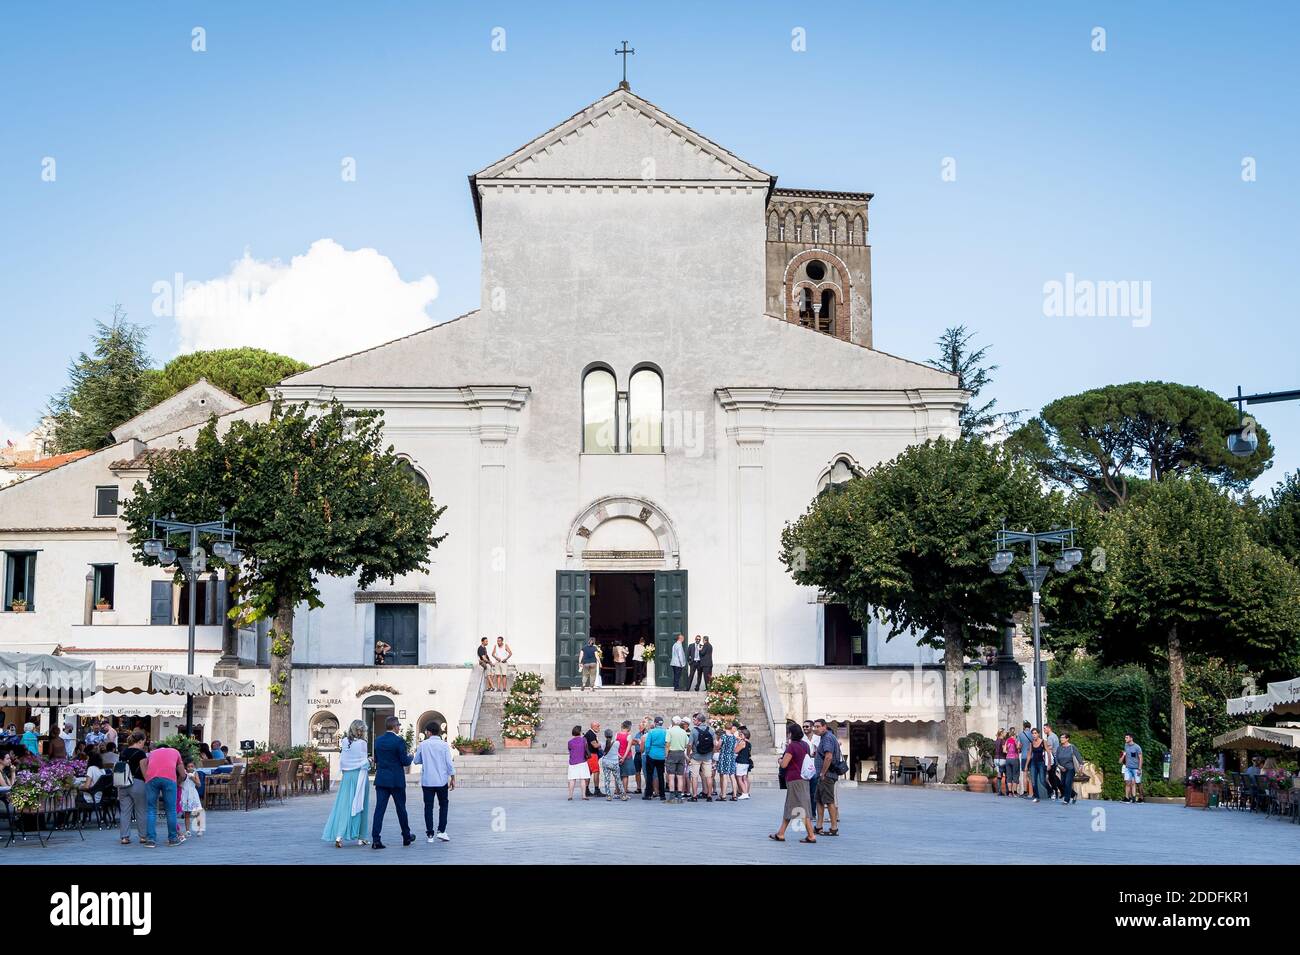 L'ingresso del Duomo di Ravello, la cattedrale della città di Ravello sulla Costiera Amalfitana. Girato dalla piazza della città con caffè e turisti. Foto Stock